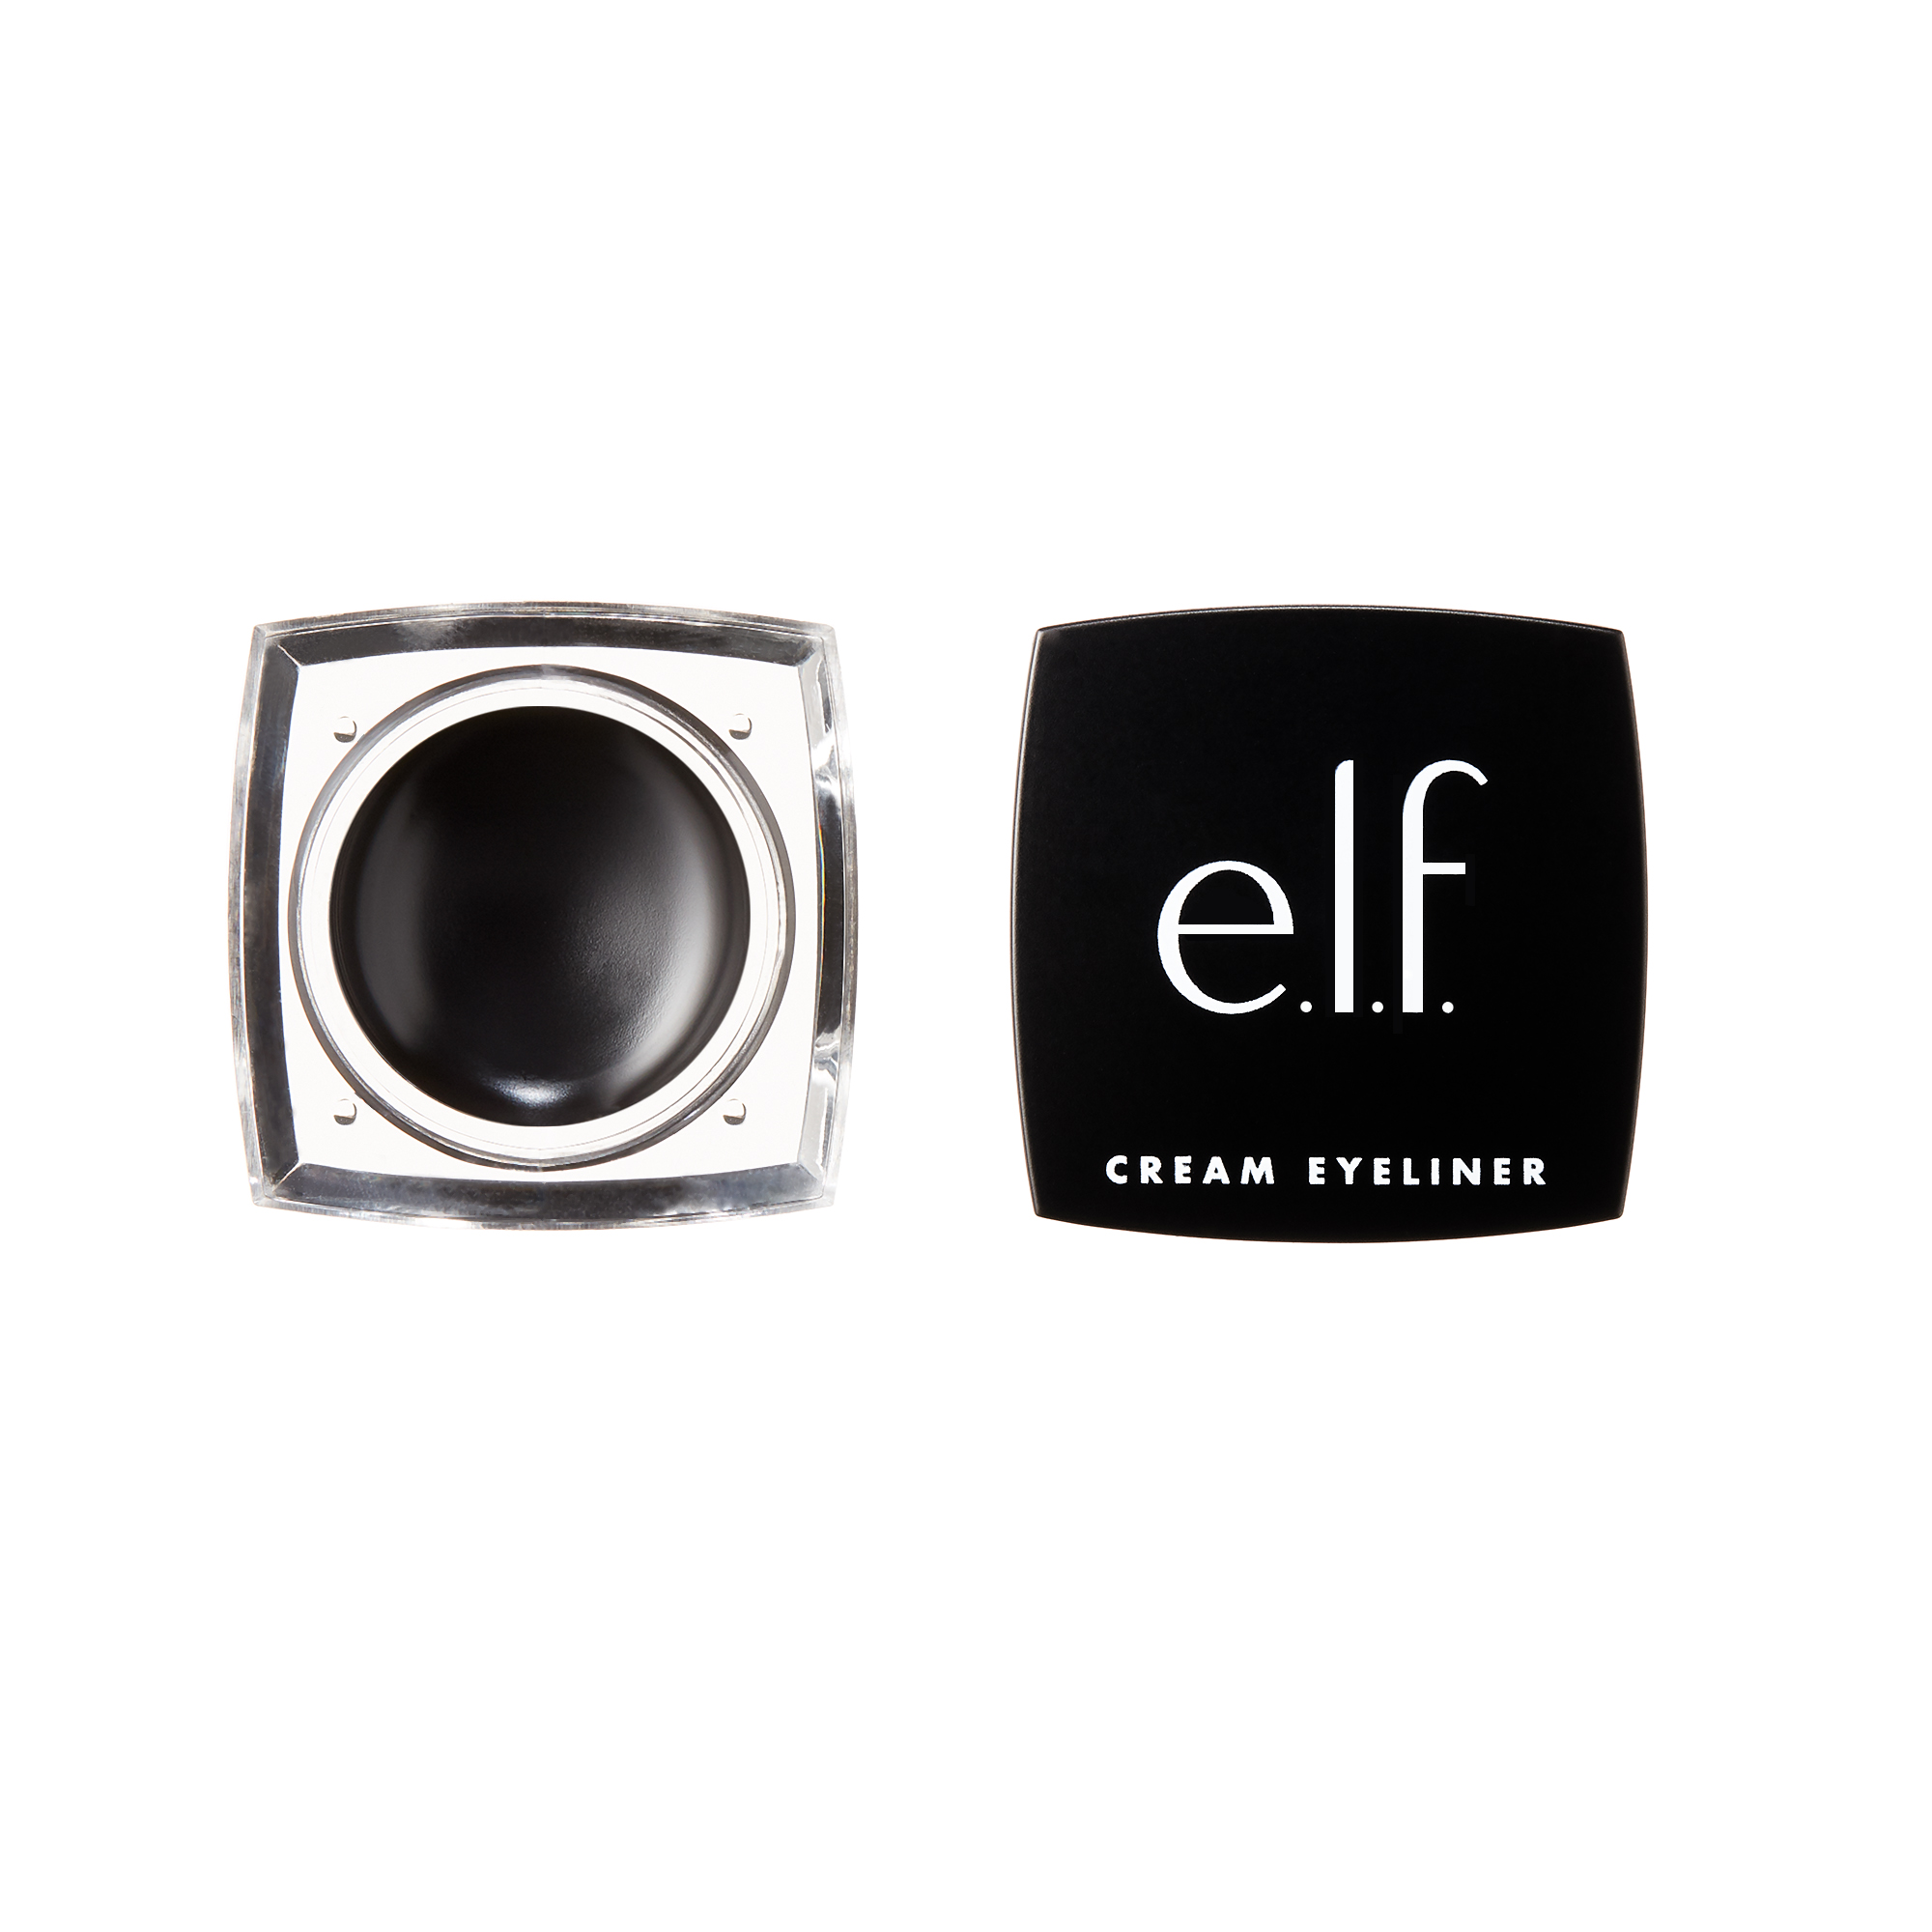 e.l.f. Cream Eyeliner, Black - image 1 of 4